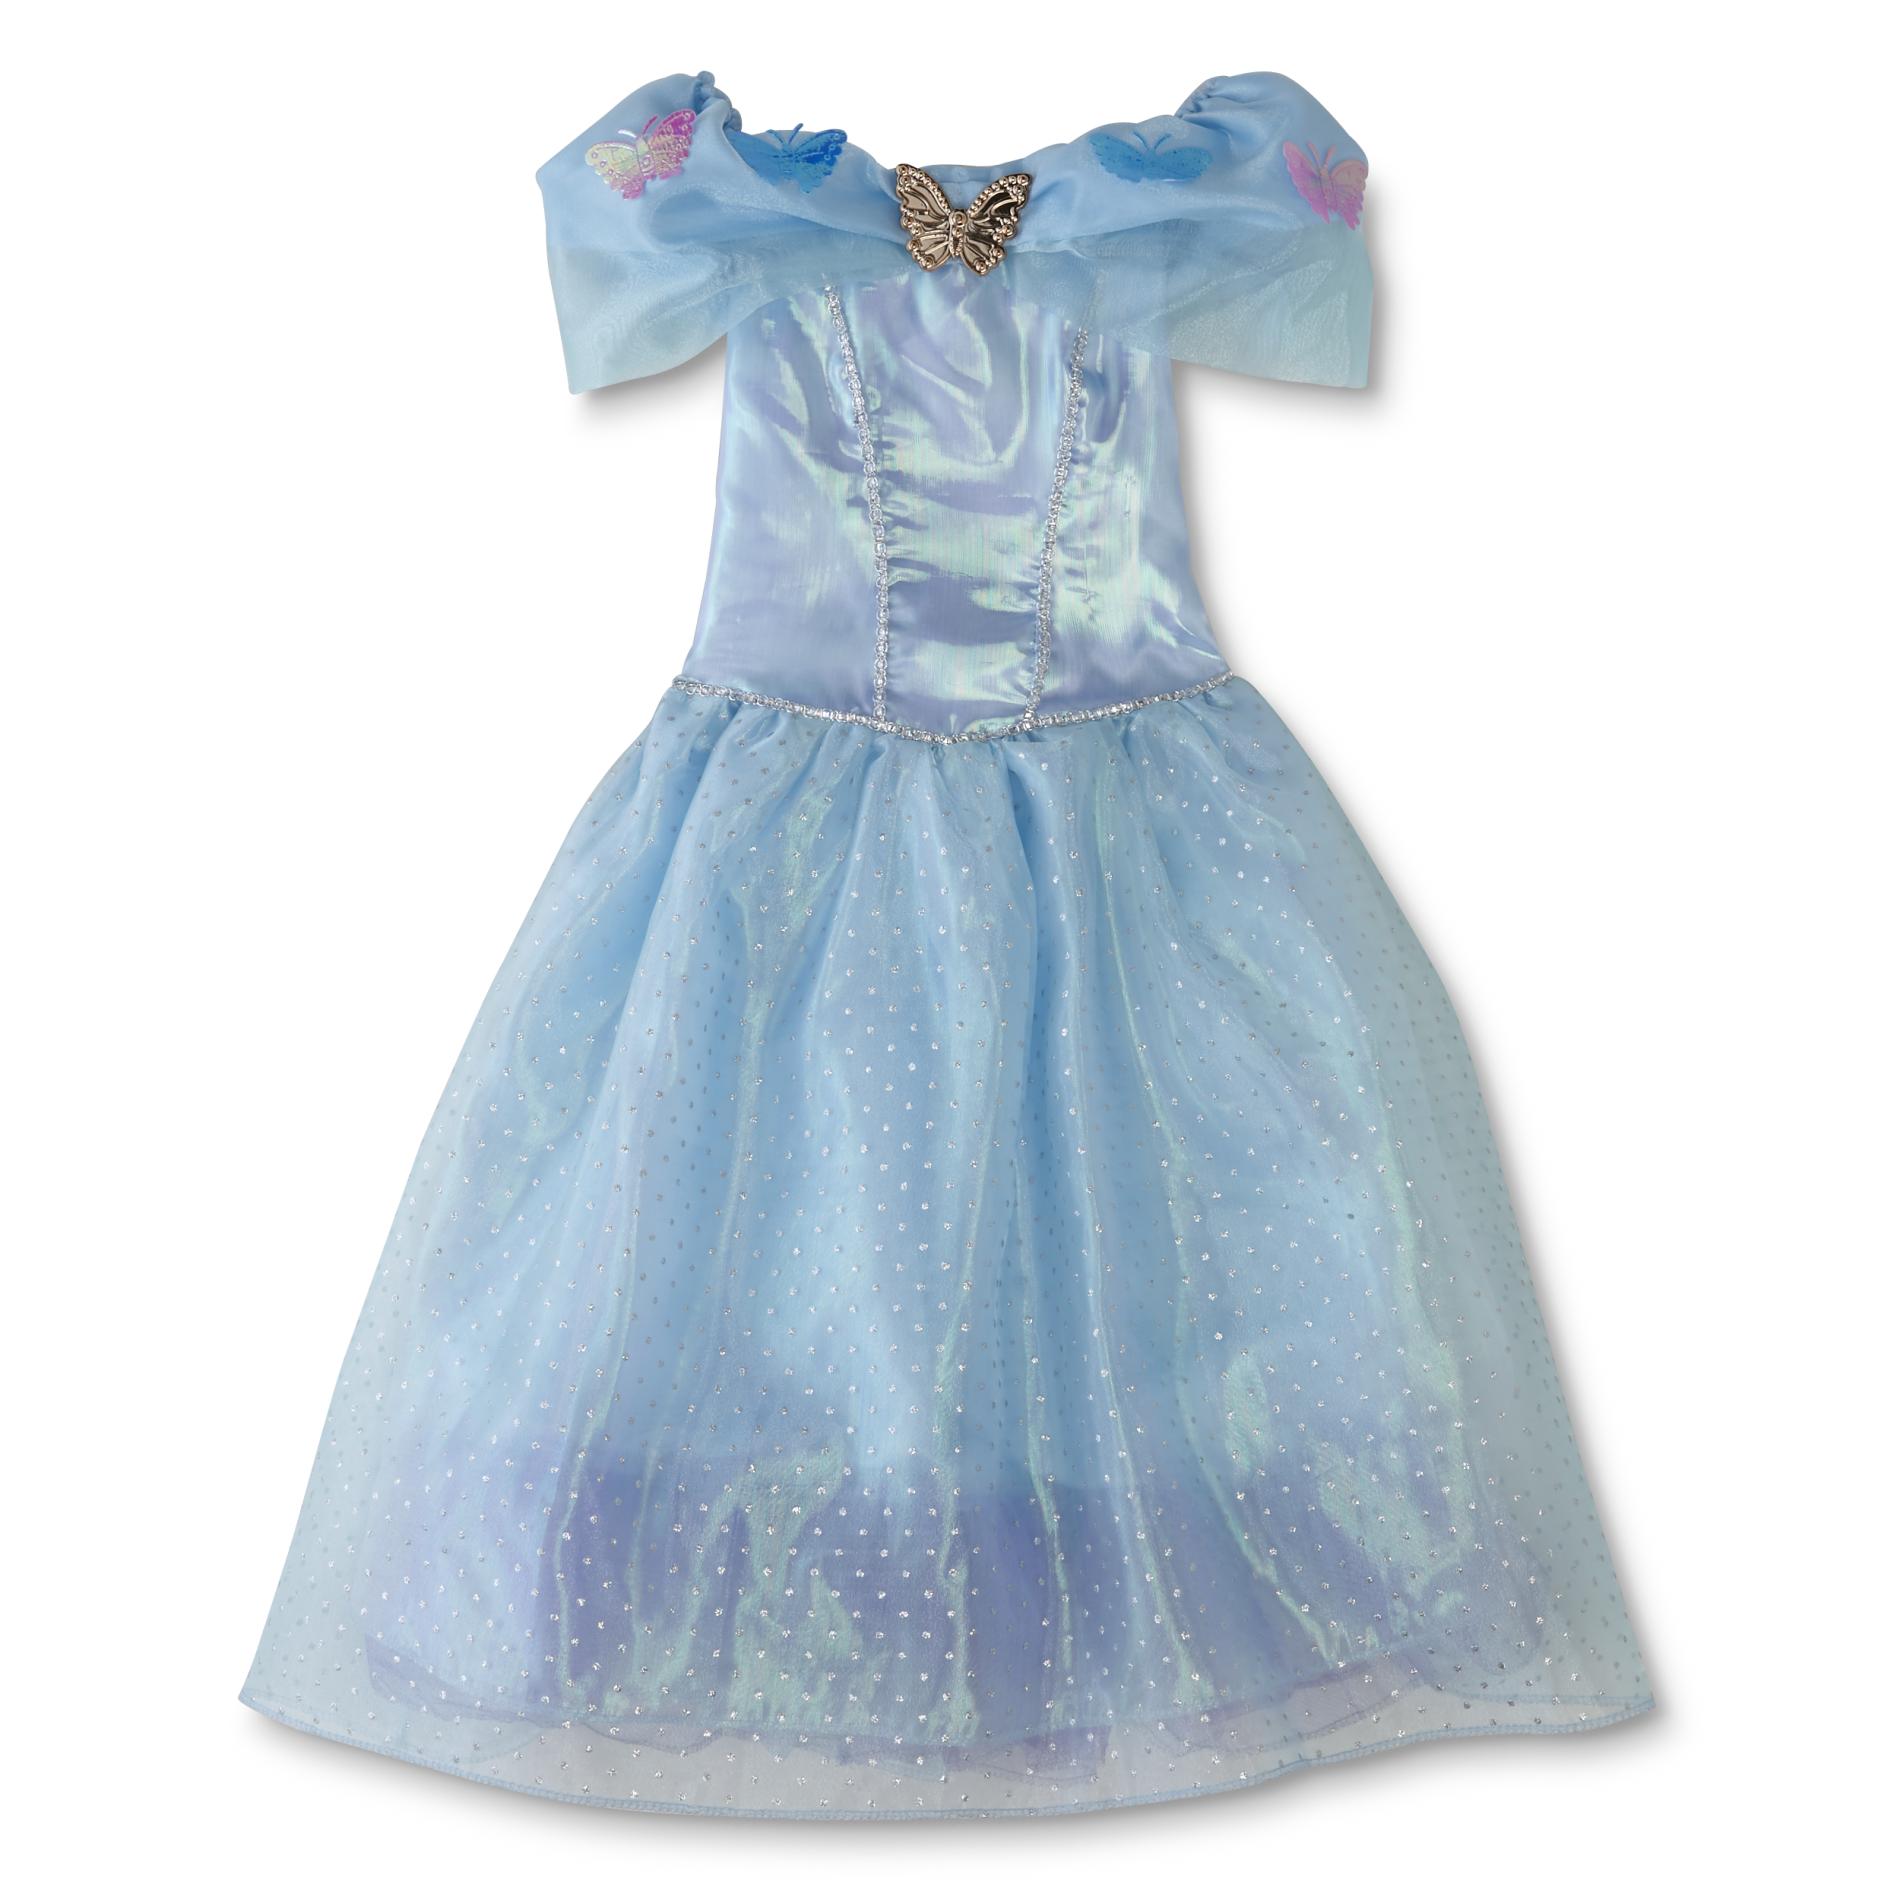 Girls' Dress-Up Princess Butterfly Dress